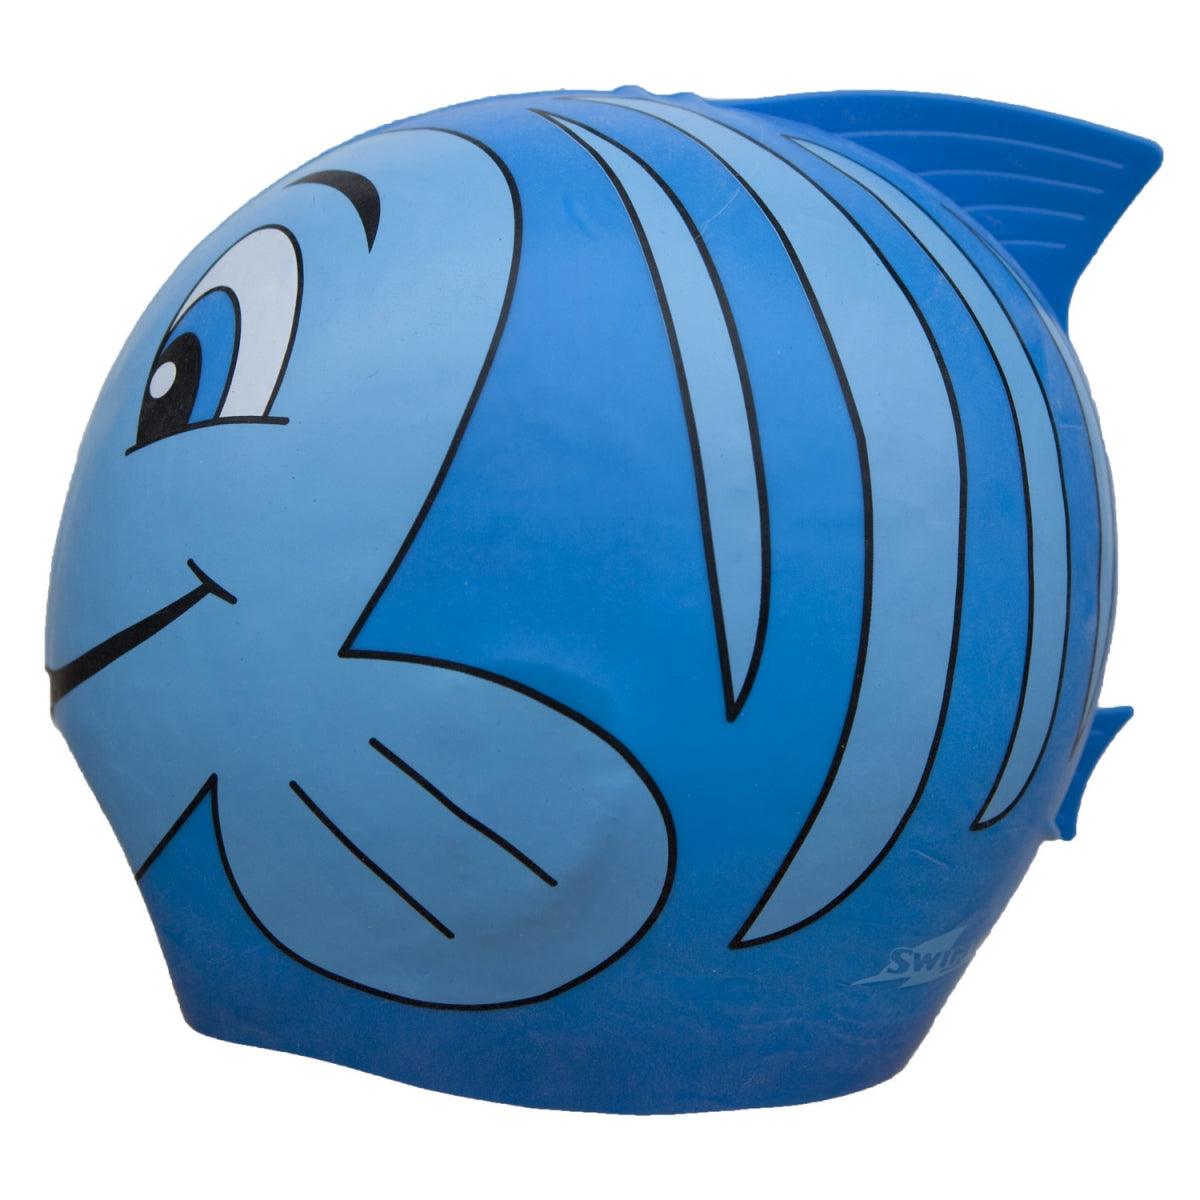 SwimFin: dziecięcy czepek silikonowy Niebieski - Noski Noski